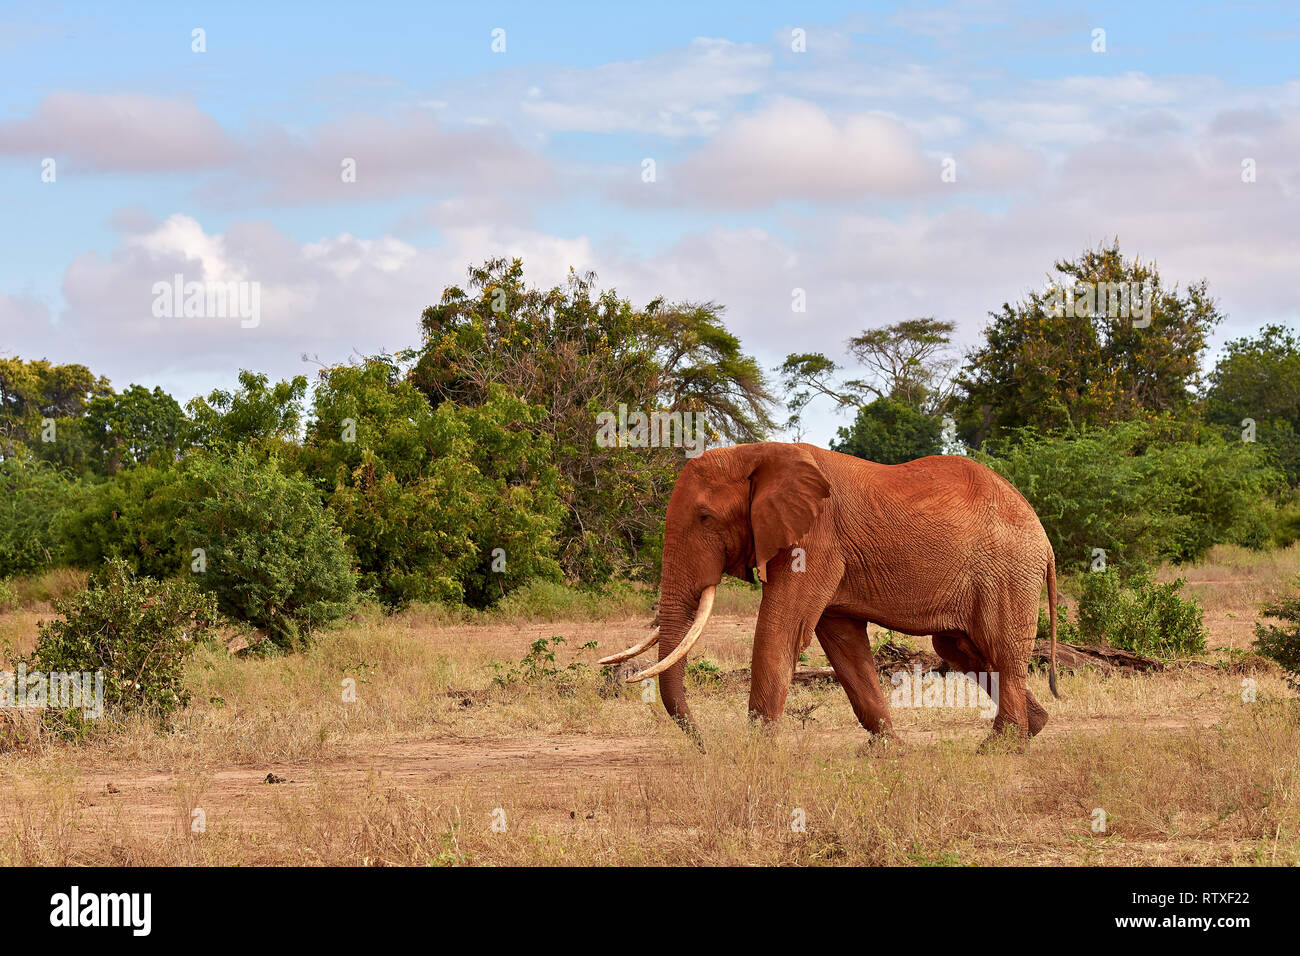 Una manada de elefantes es salvaje y golpeando en safari en Kenia - África. Árboles y hierba. Foto de stock